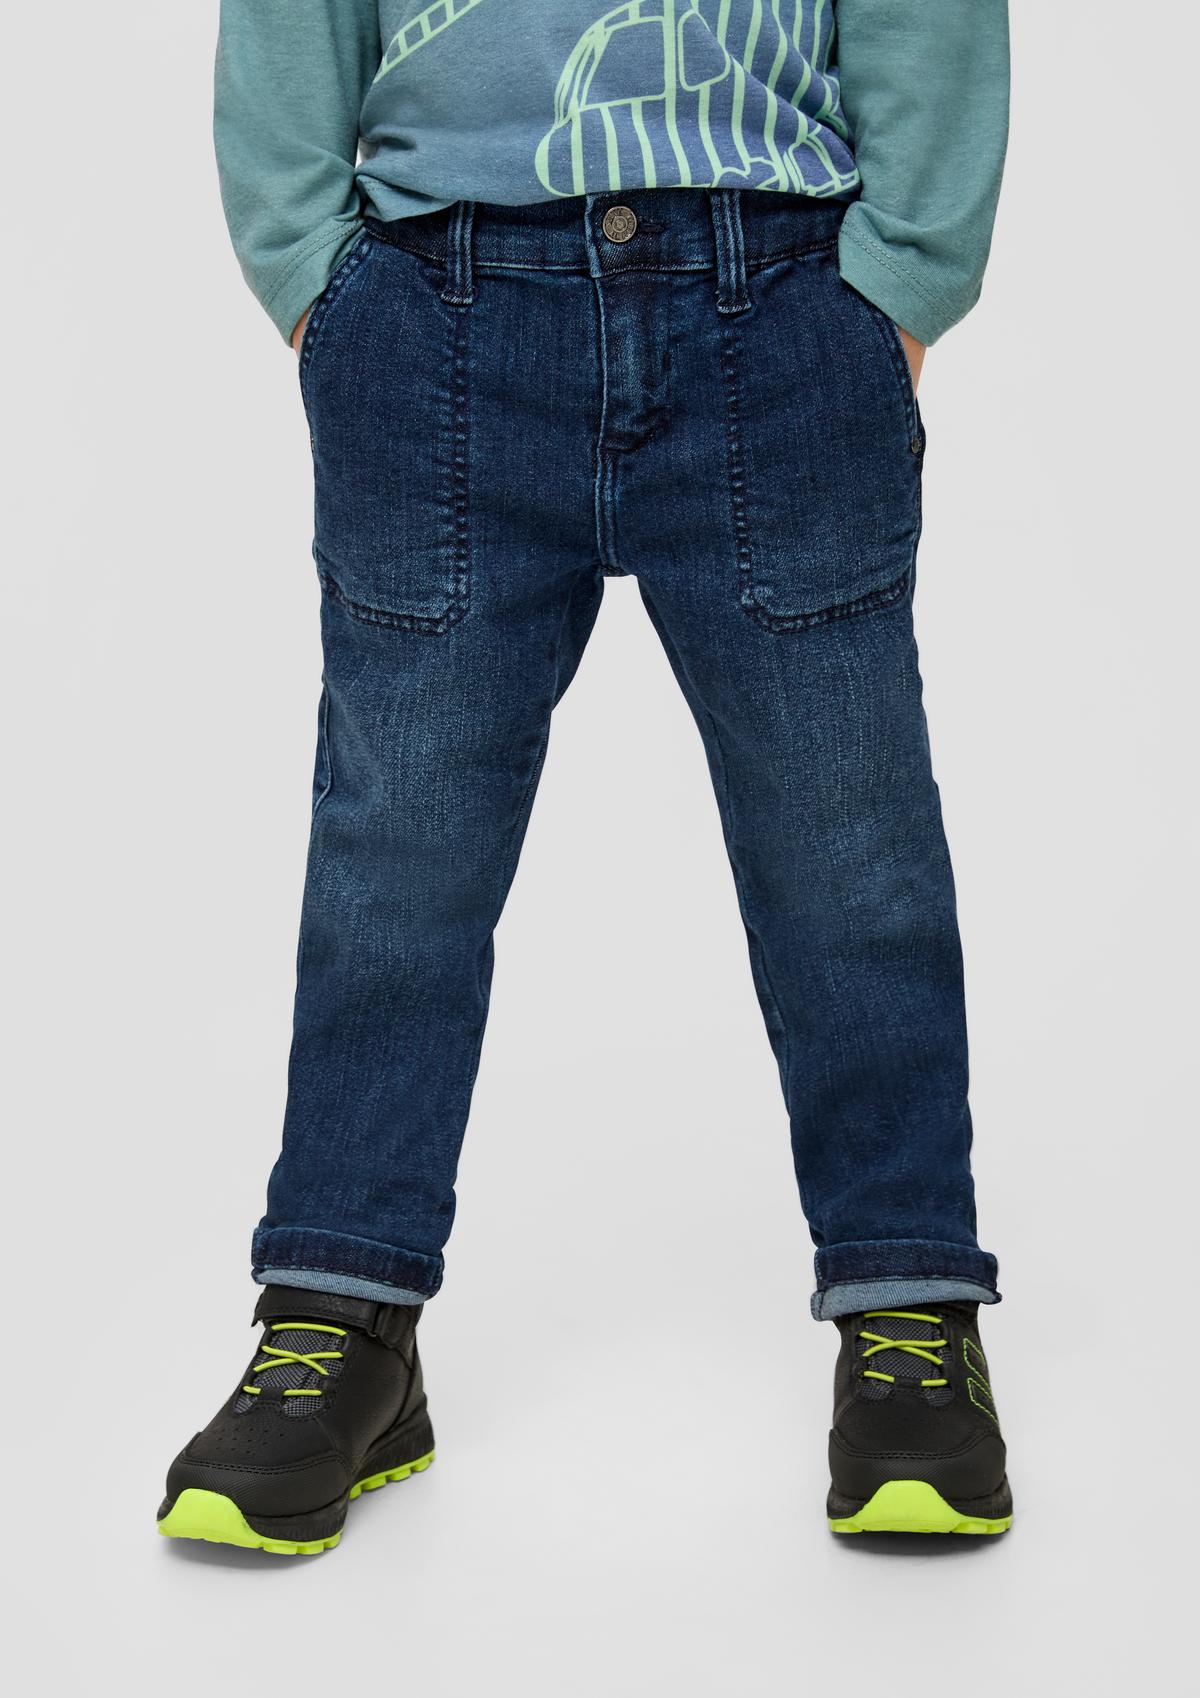 s.Oliver Pelle : jean ajustable à la taille